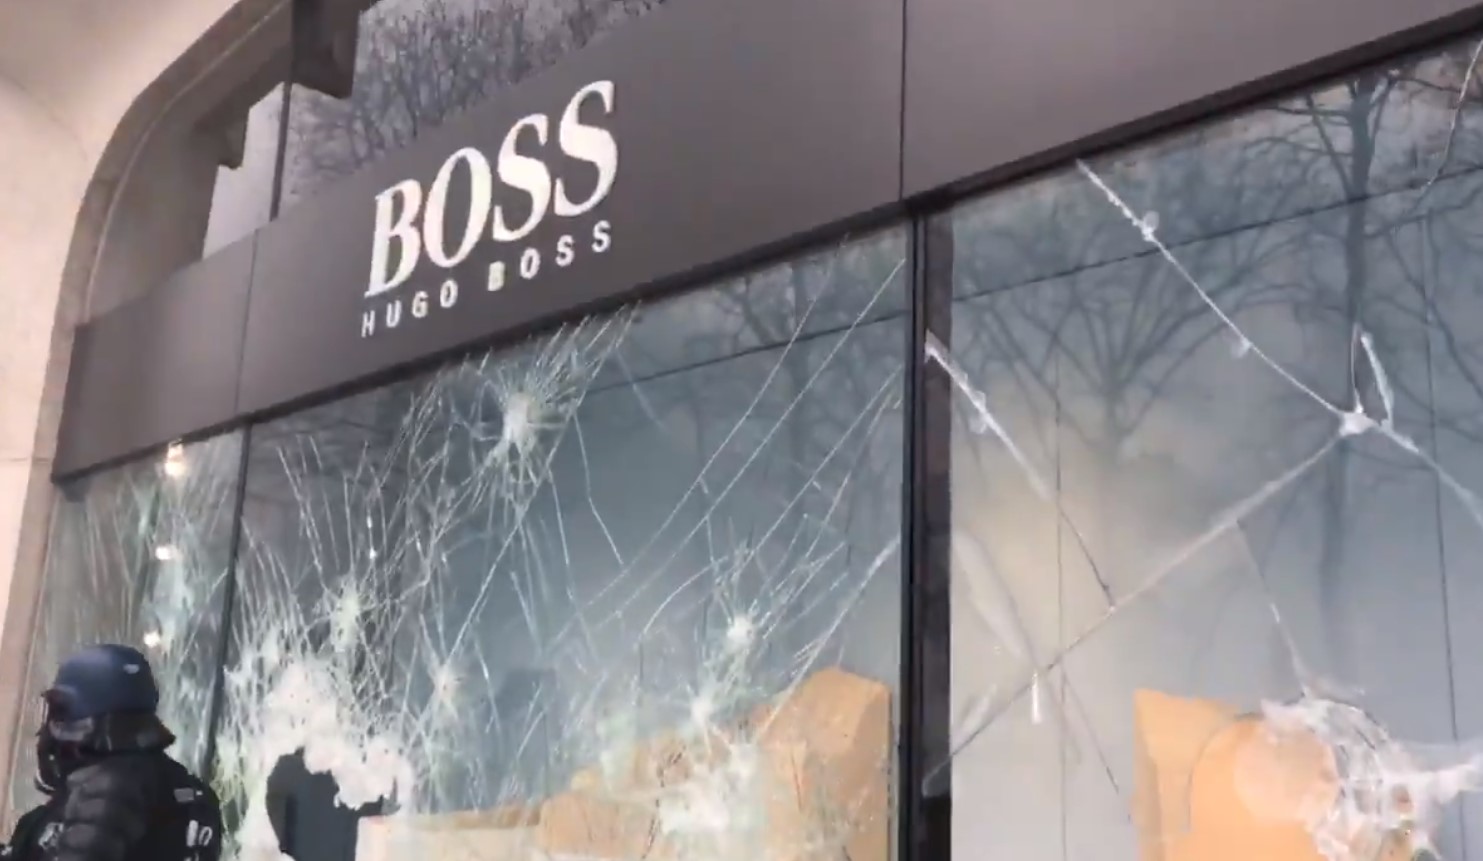 VIDEO: Saquean tienda Hugo Boss en el centro de París